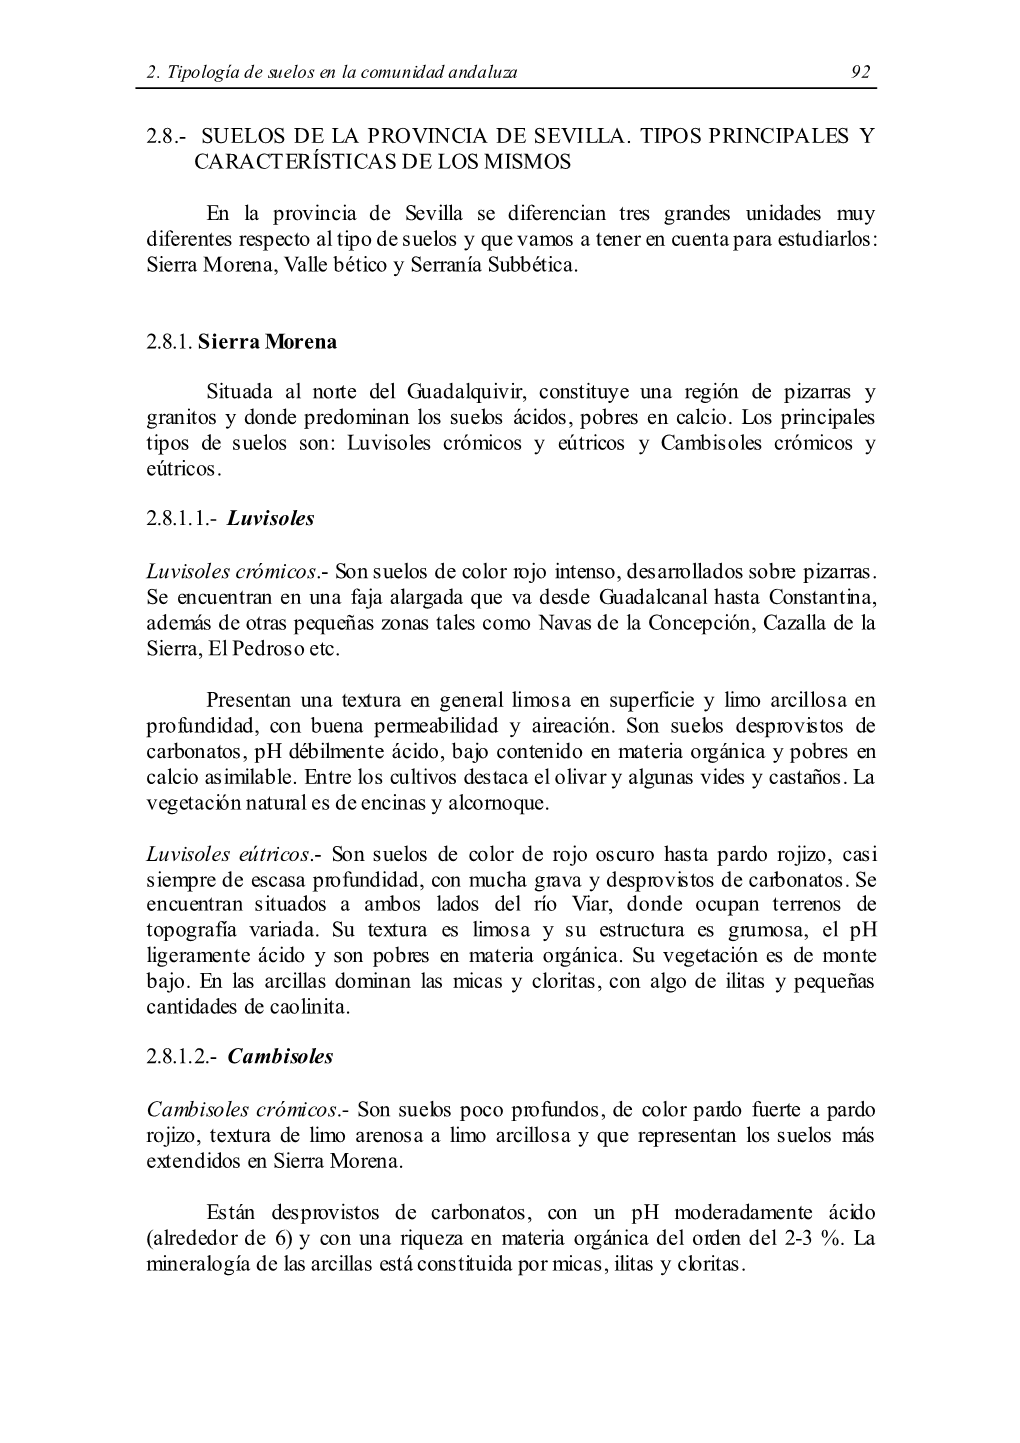 2.8.- Suelos De La Provincia De Sevilla. Tipos Principales Y Caract Erísticas De Los Mismos